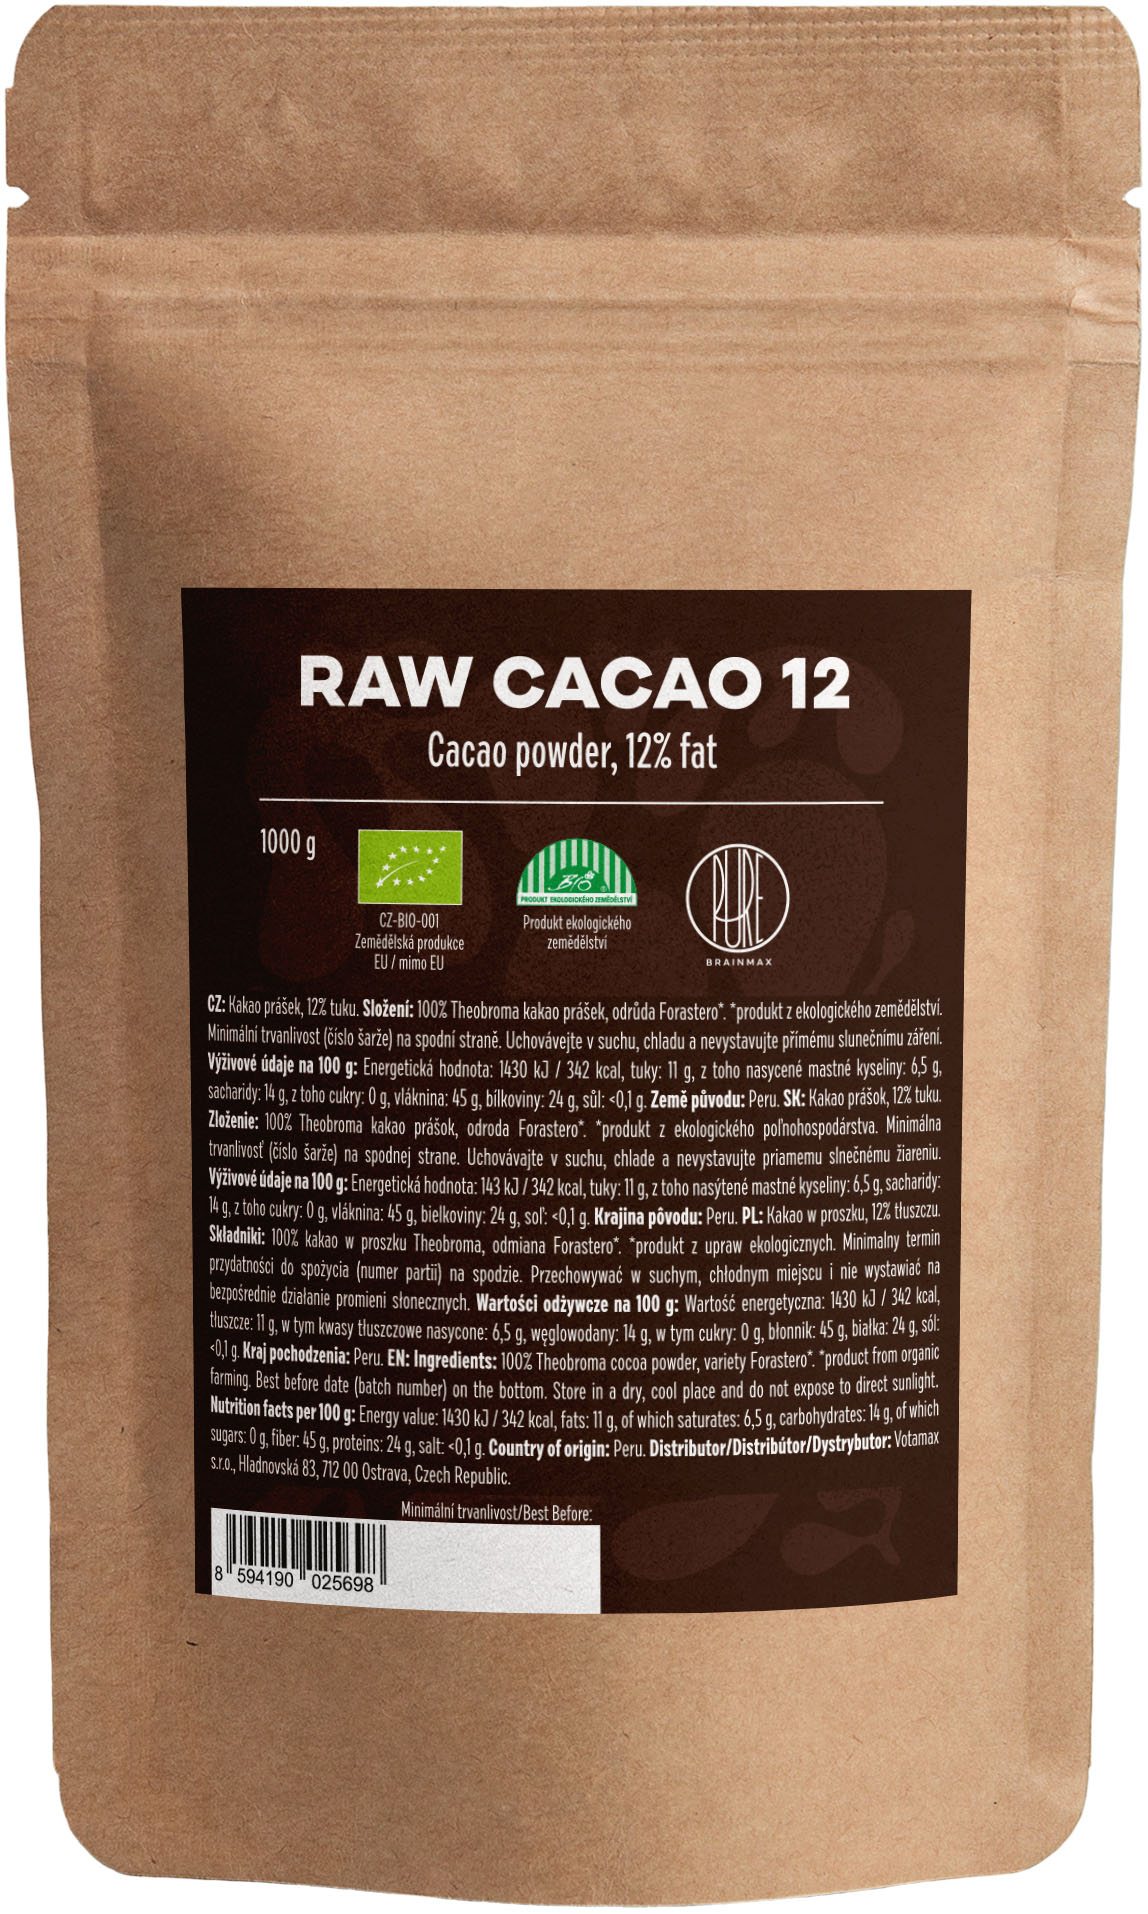 BrainMax Pure Raw Cacao 12, BIO, 1kg *CZ-BIO-001 certifikát